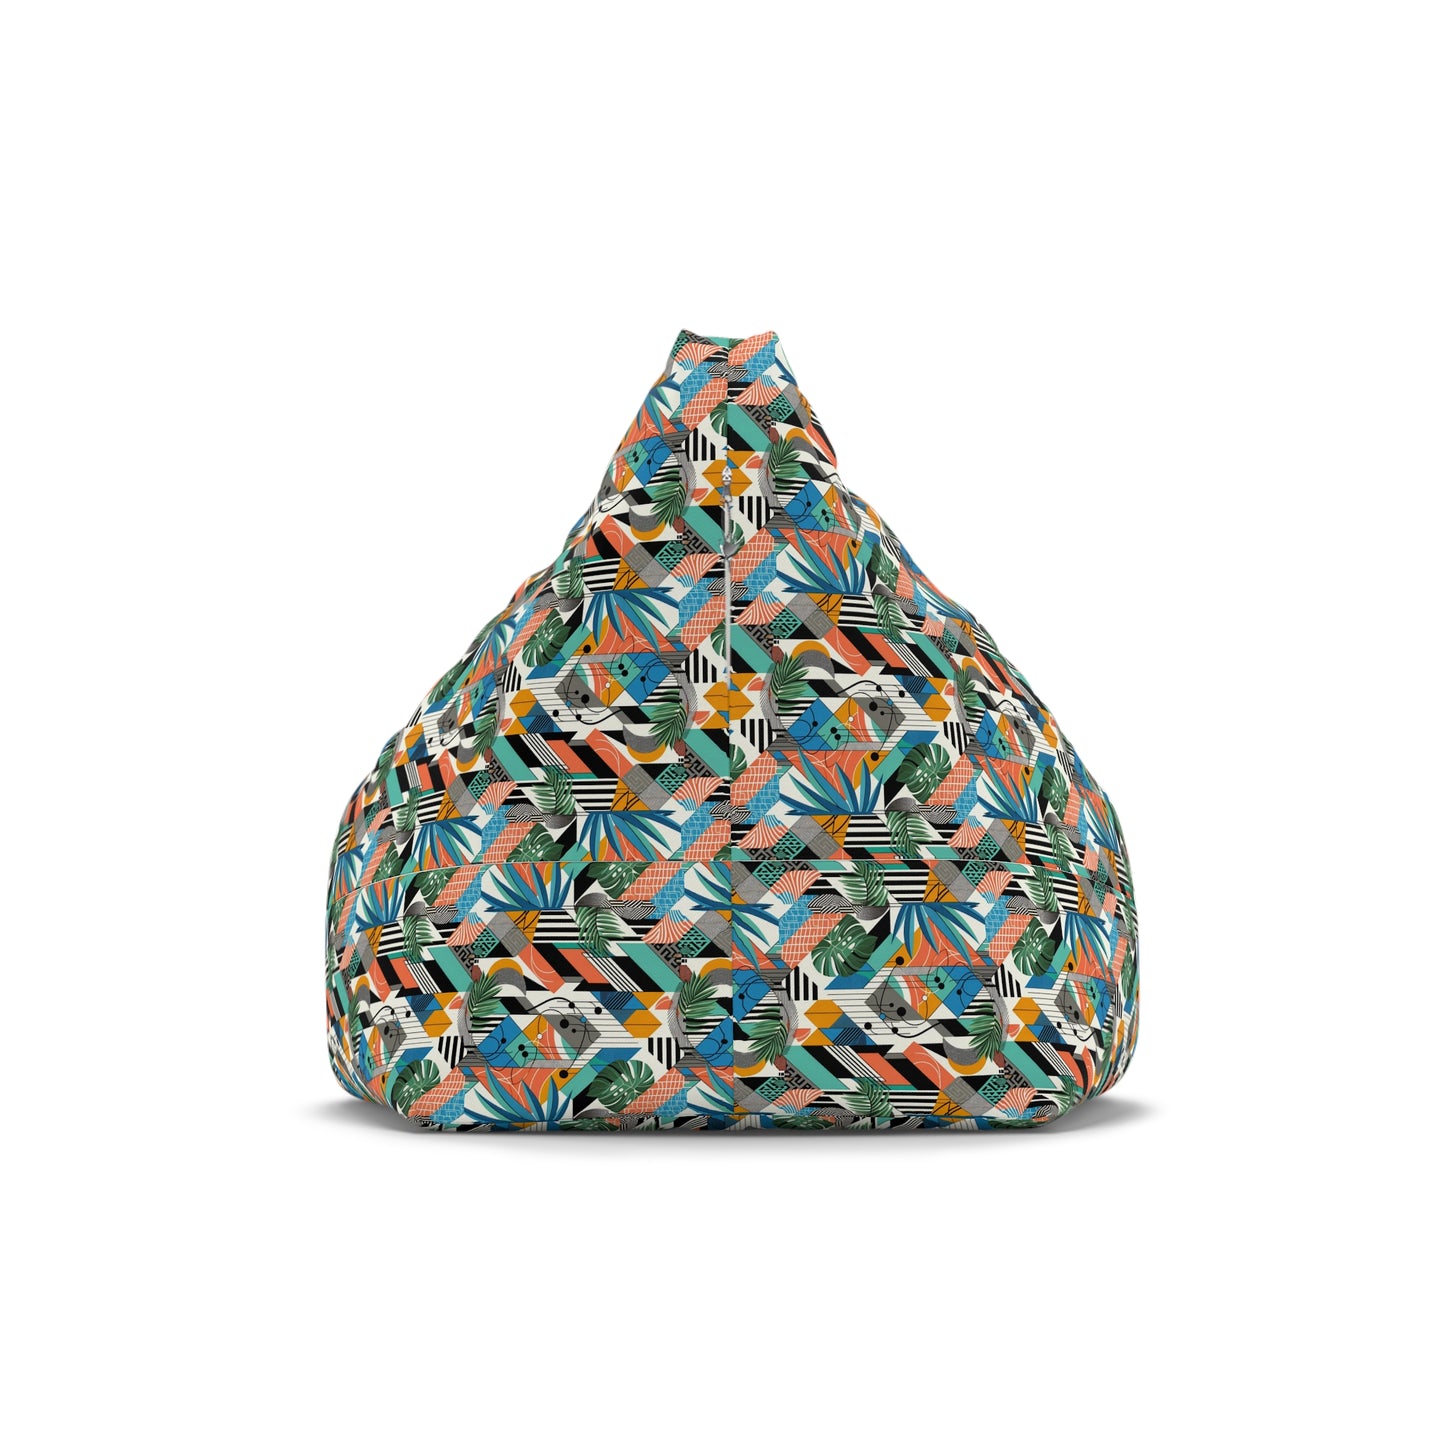 Tropical Geometric Bliss Bean Bag Chair Cover